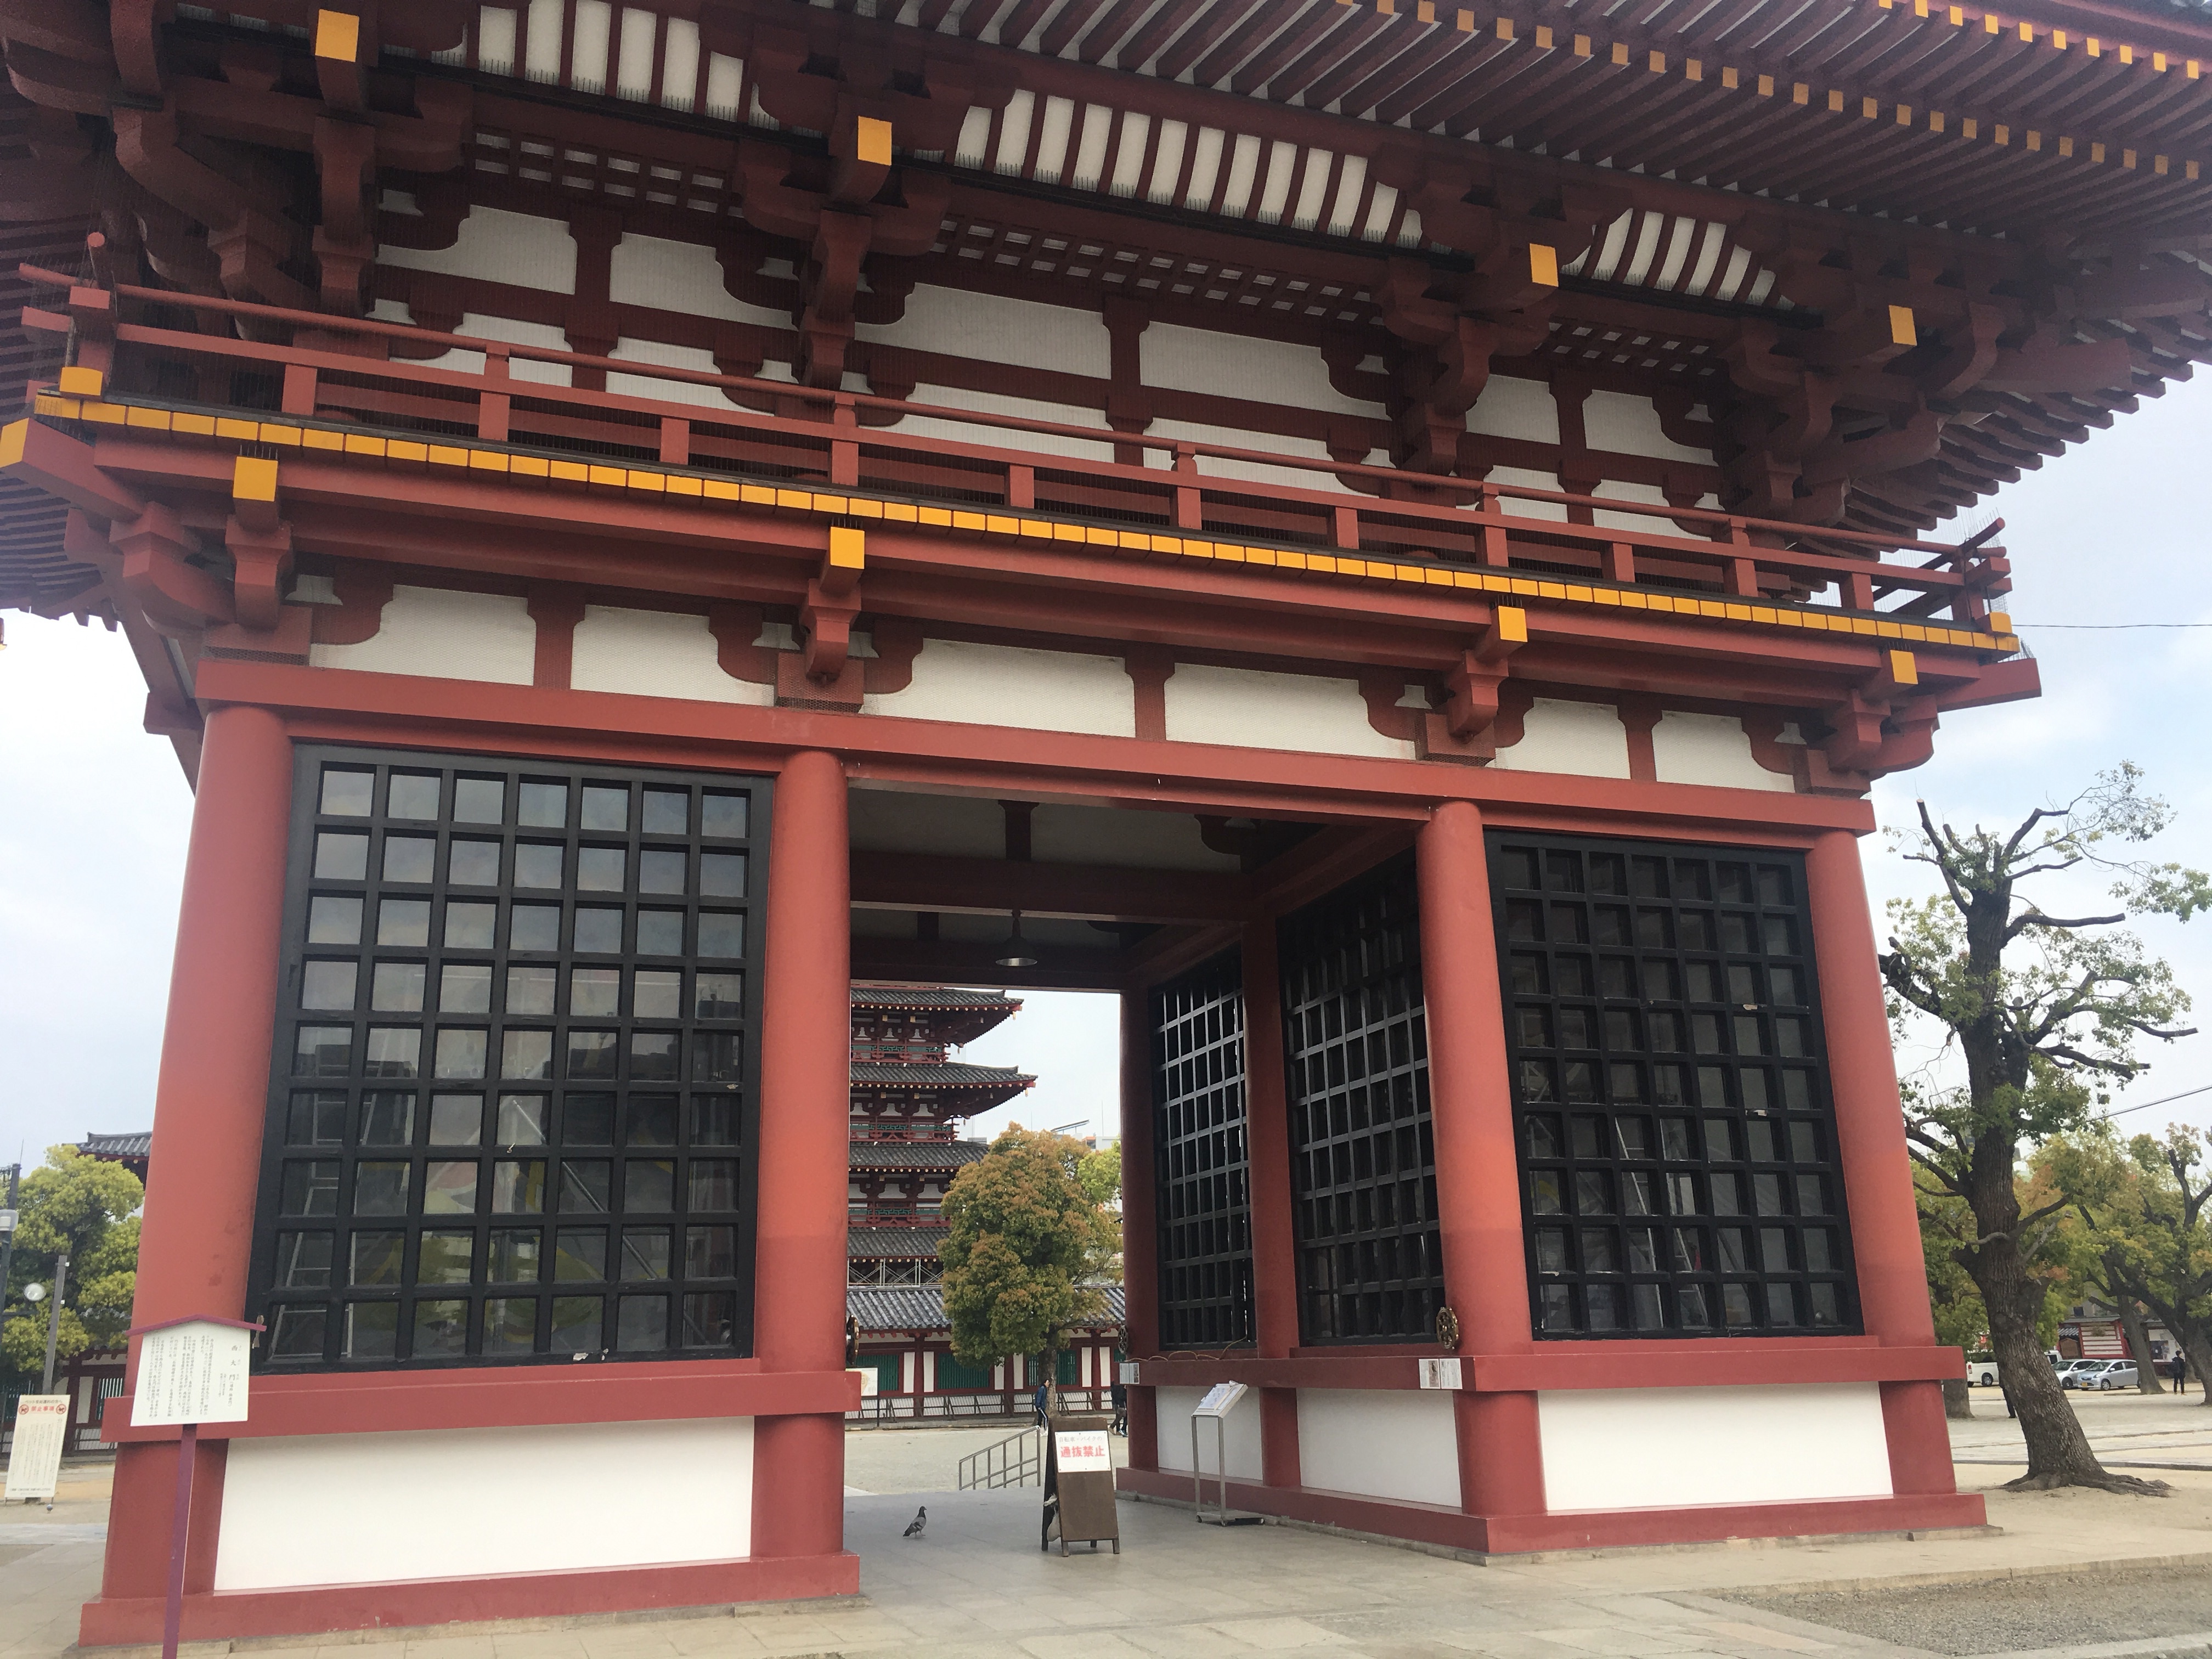 大阪の和宗総本山、四天王寺に行ってみました